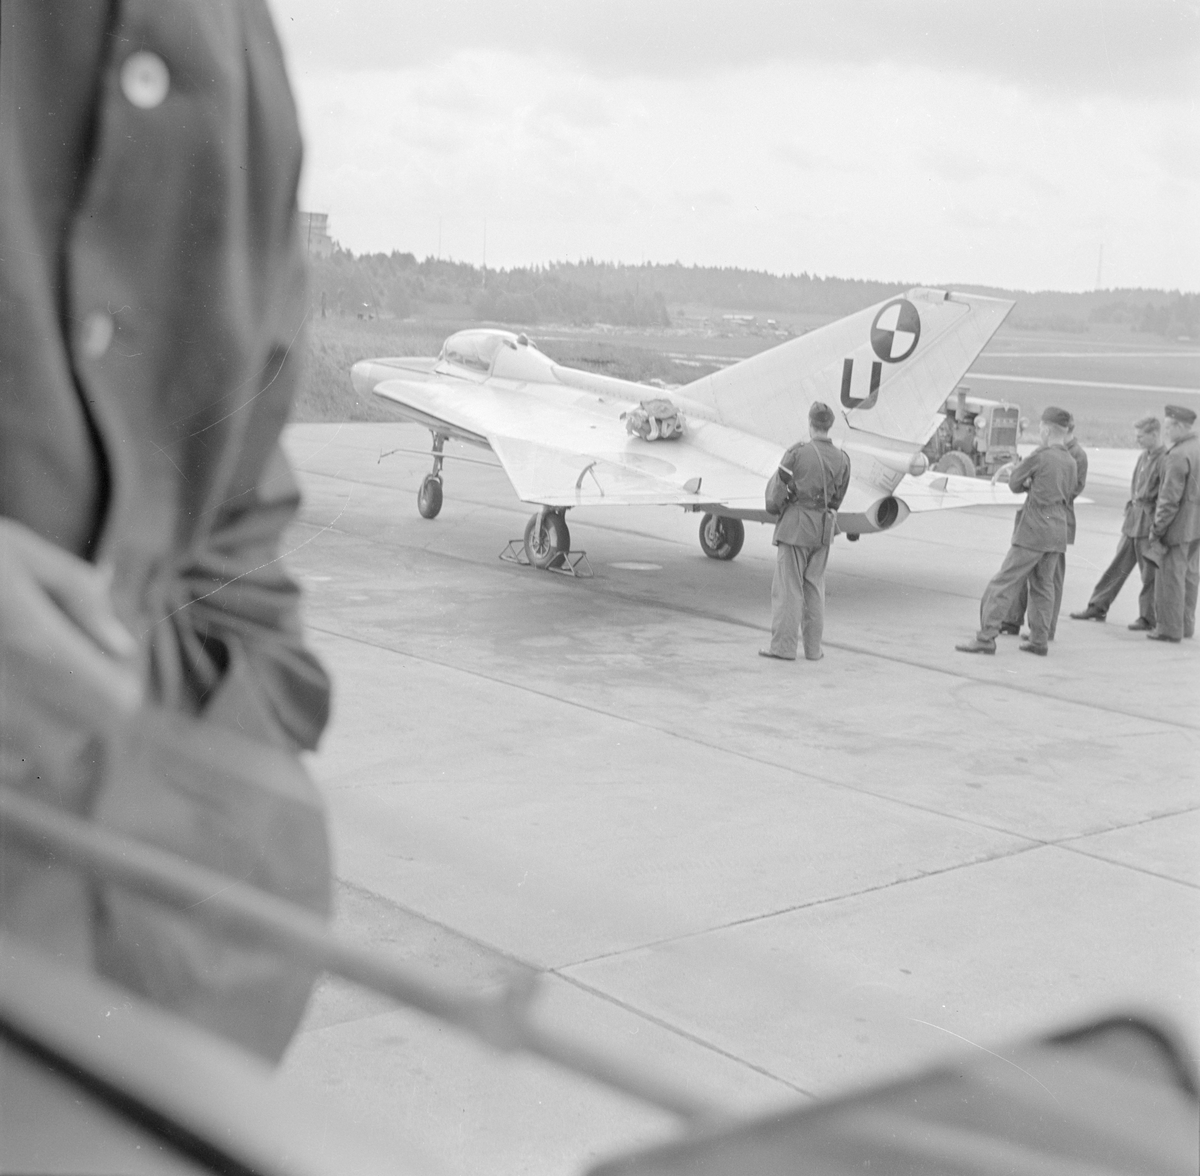 Provflygplan Saab 210 Lilldraken bevakas av militär på flygfältet på F 8 Barkarby. Sett bakifrån.